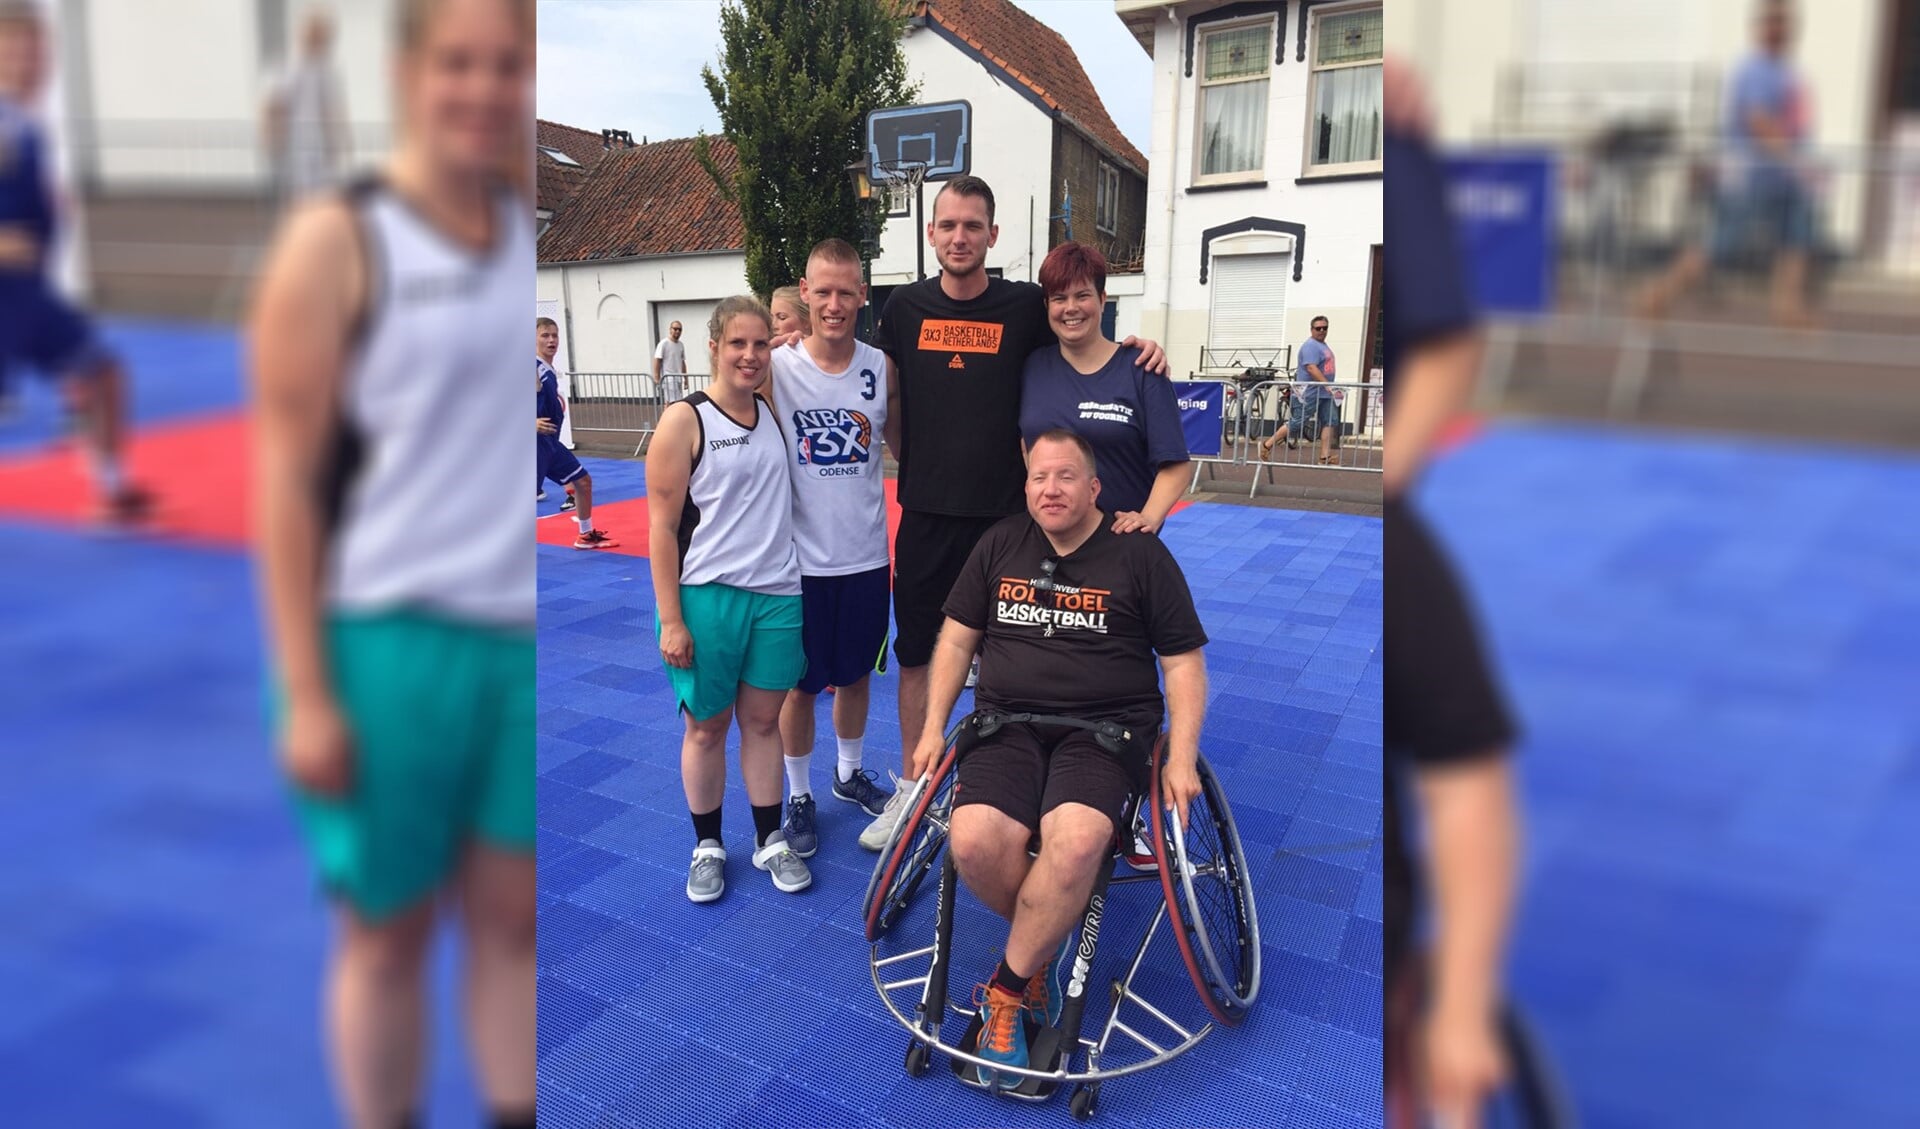 Sjoerd van Vilsteren Irechtsonder), speler van het nationale rolstoelteam dat zilver won tijdens het WK 2017, woonde de clinics bij.  